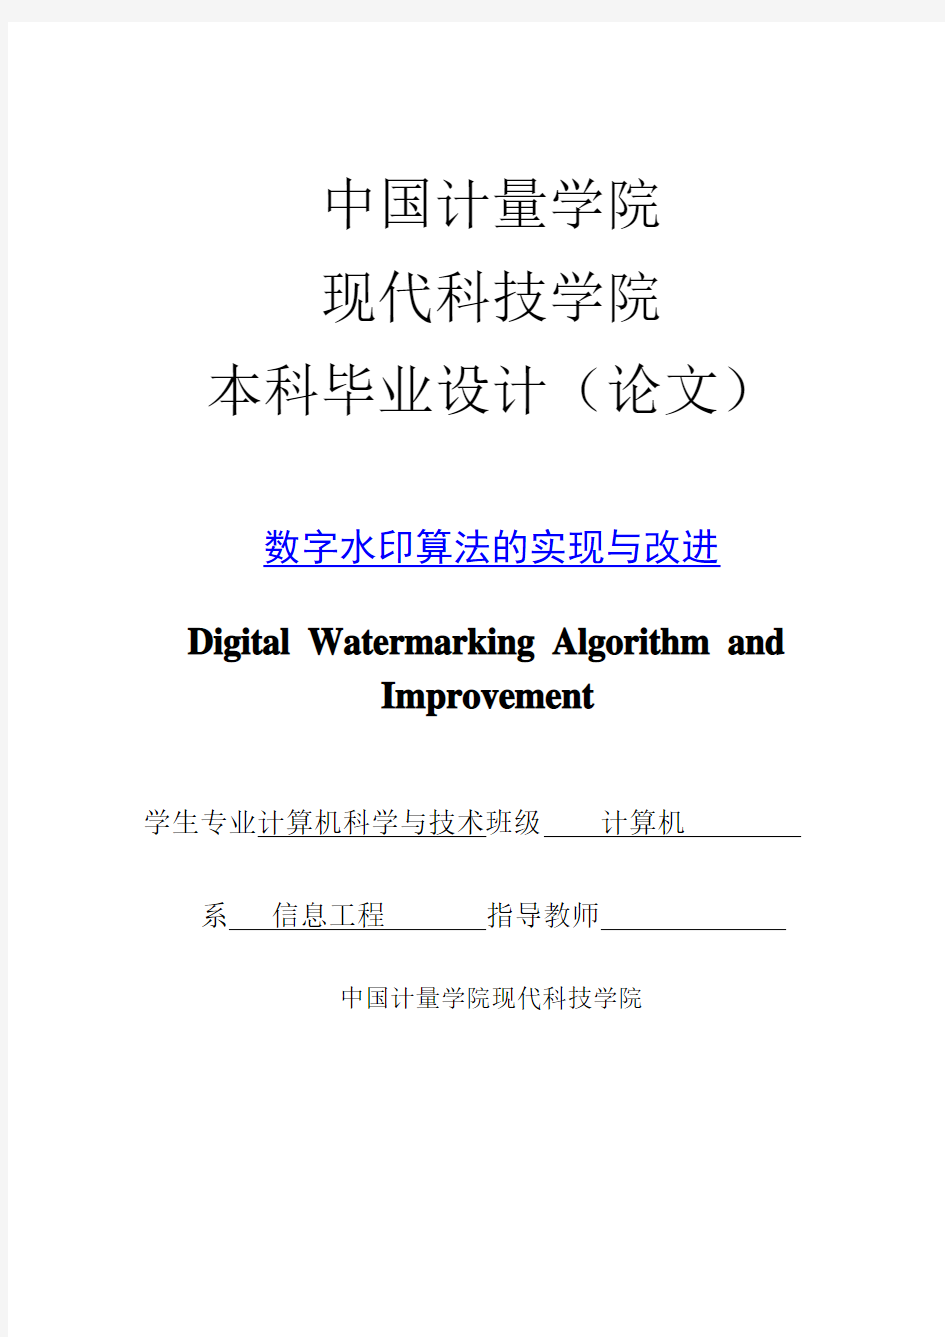 本科毕业设计(论文)数字水印算法的实现与改进